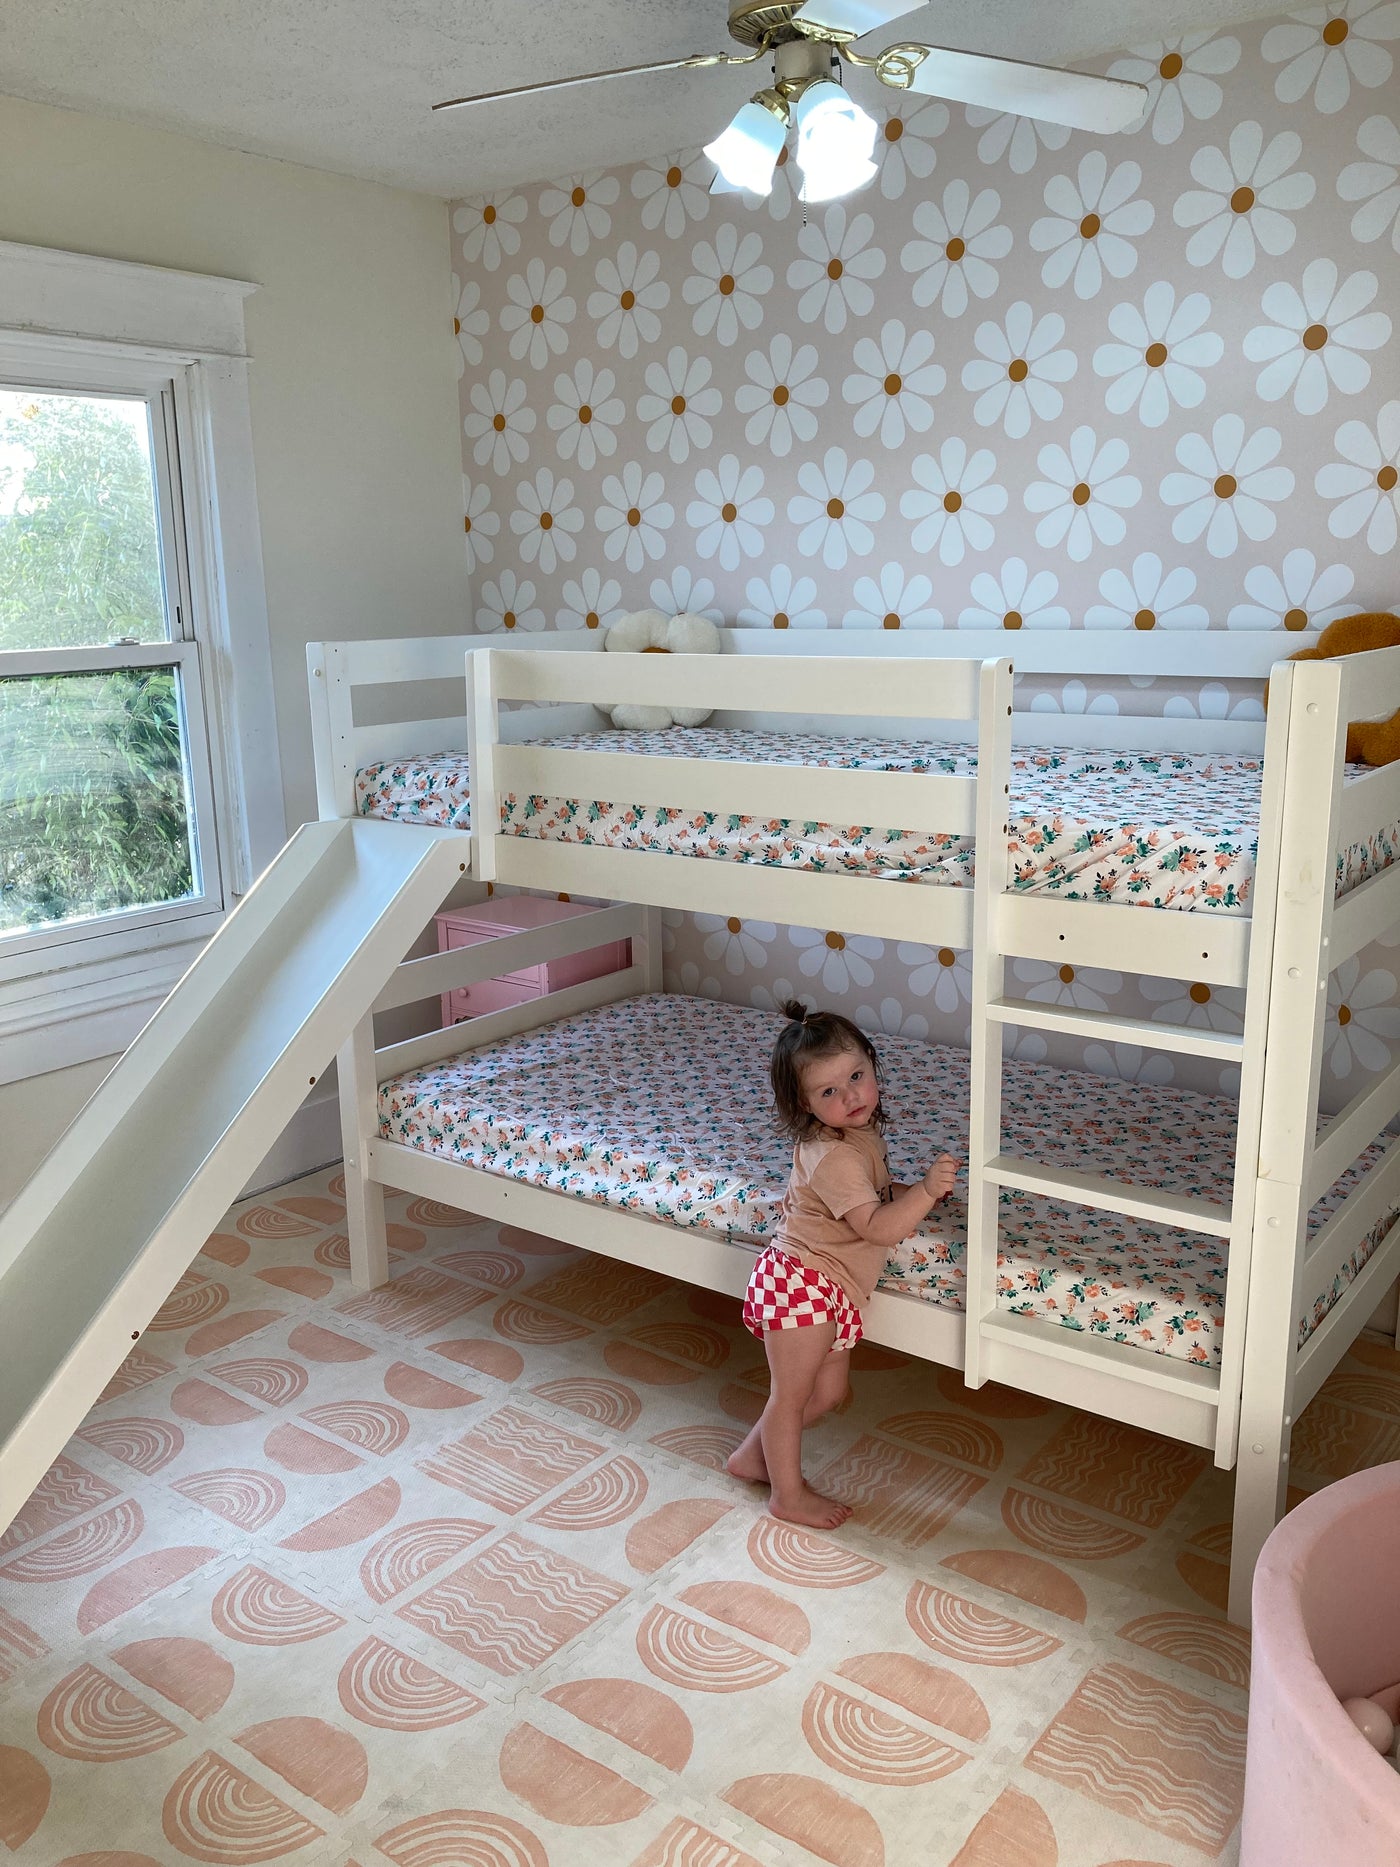 Olivia Bunk Bed with Slide Custom Kids Furniture